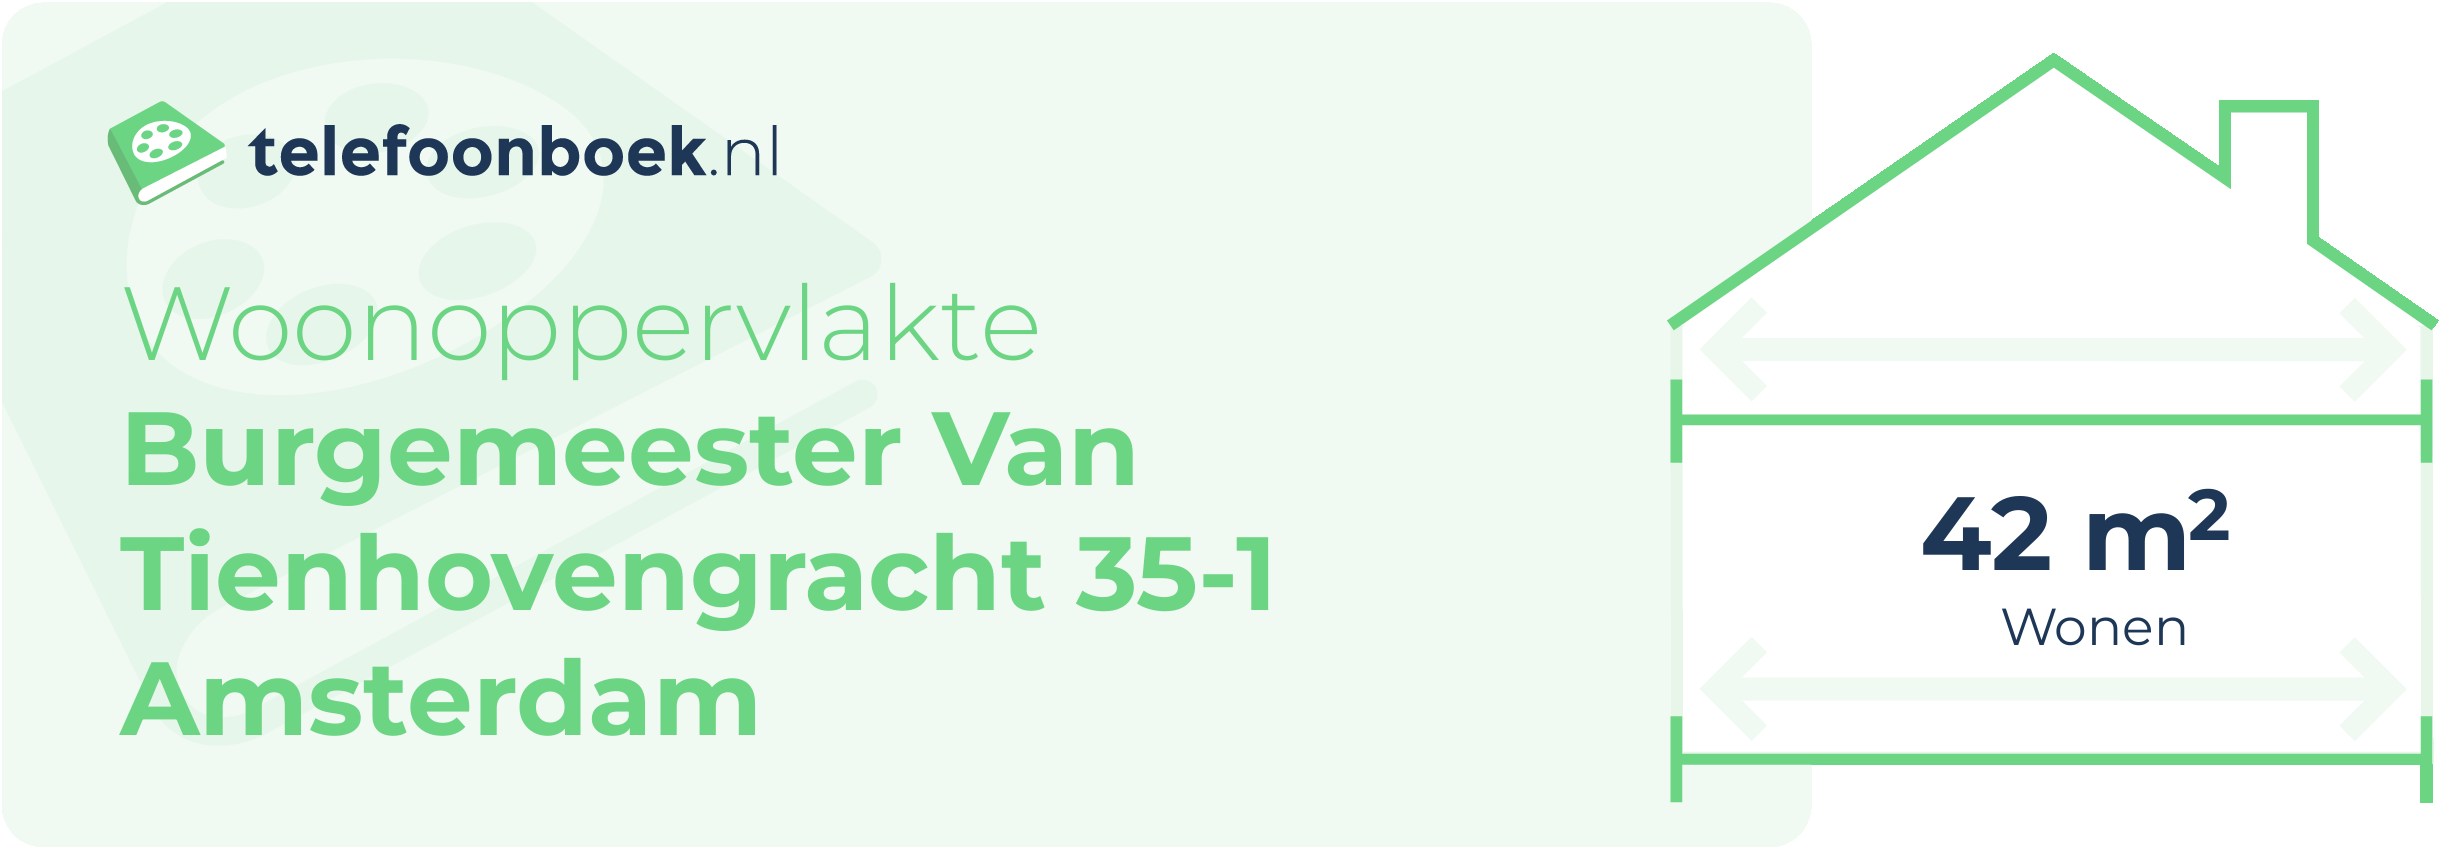 Woonoppervlakte Burgemeester Van Tienhovengracht 35-1 Amsterdam